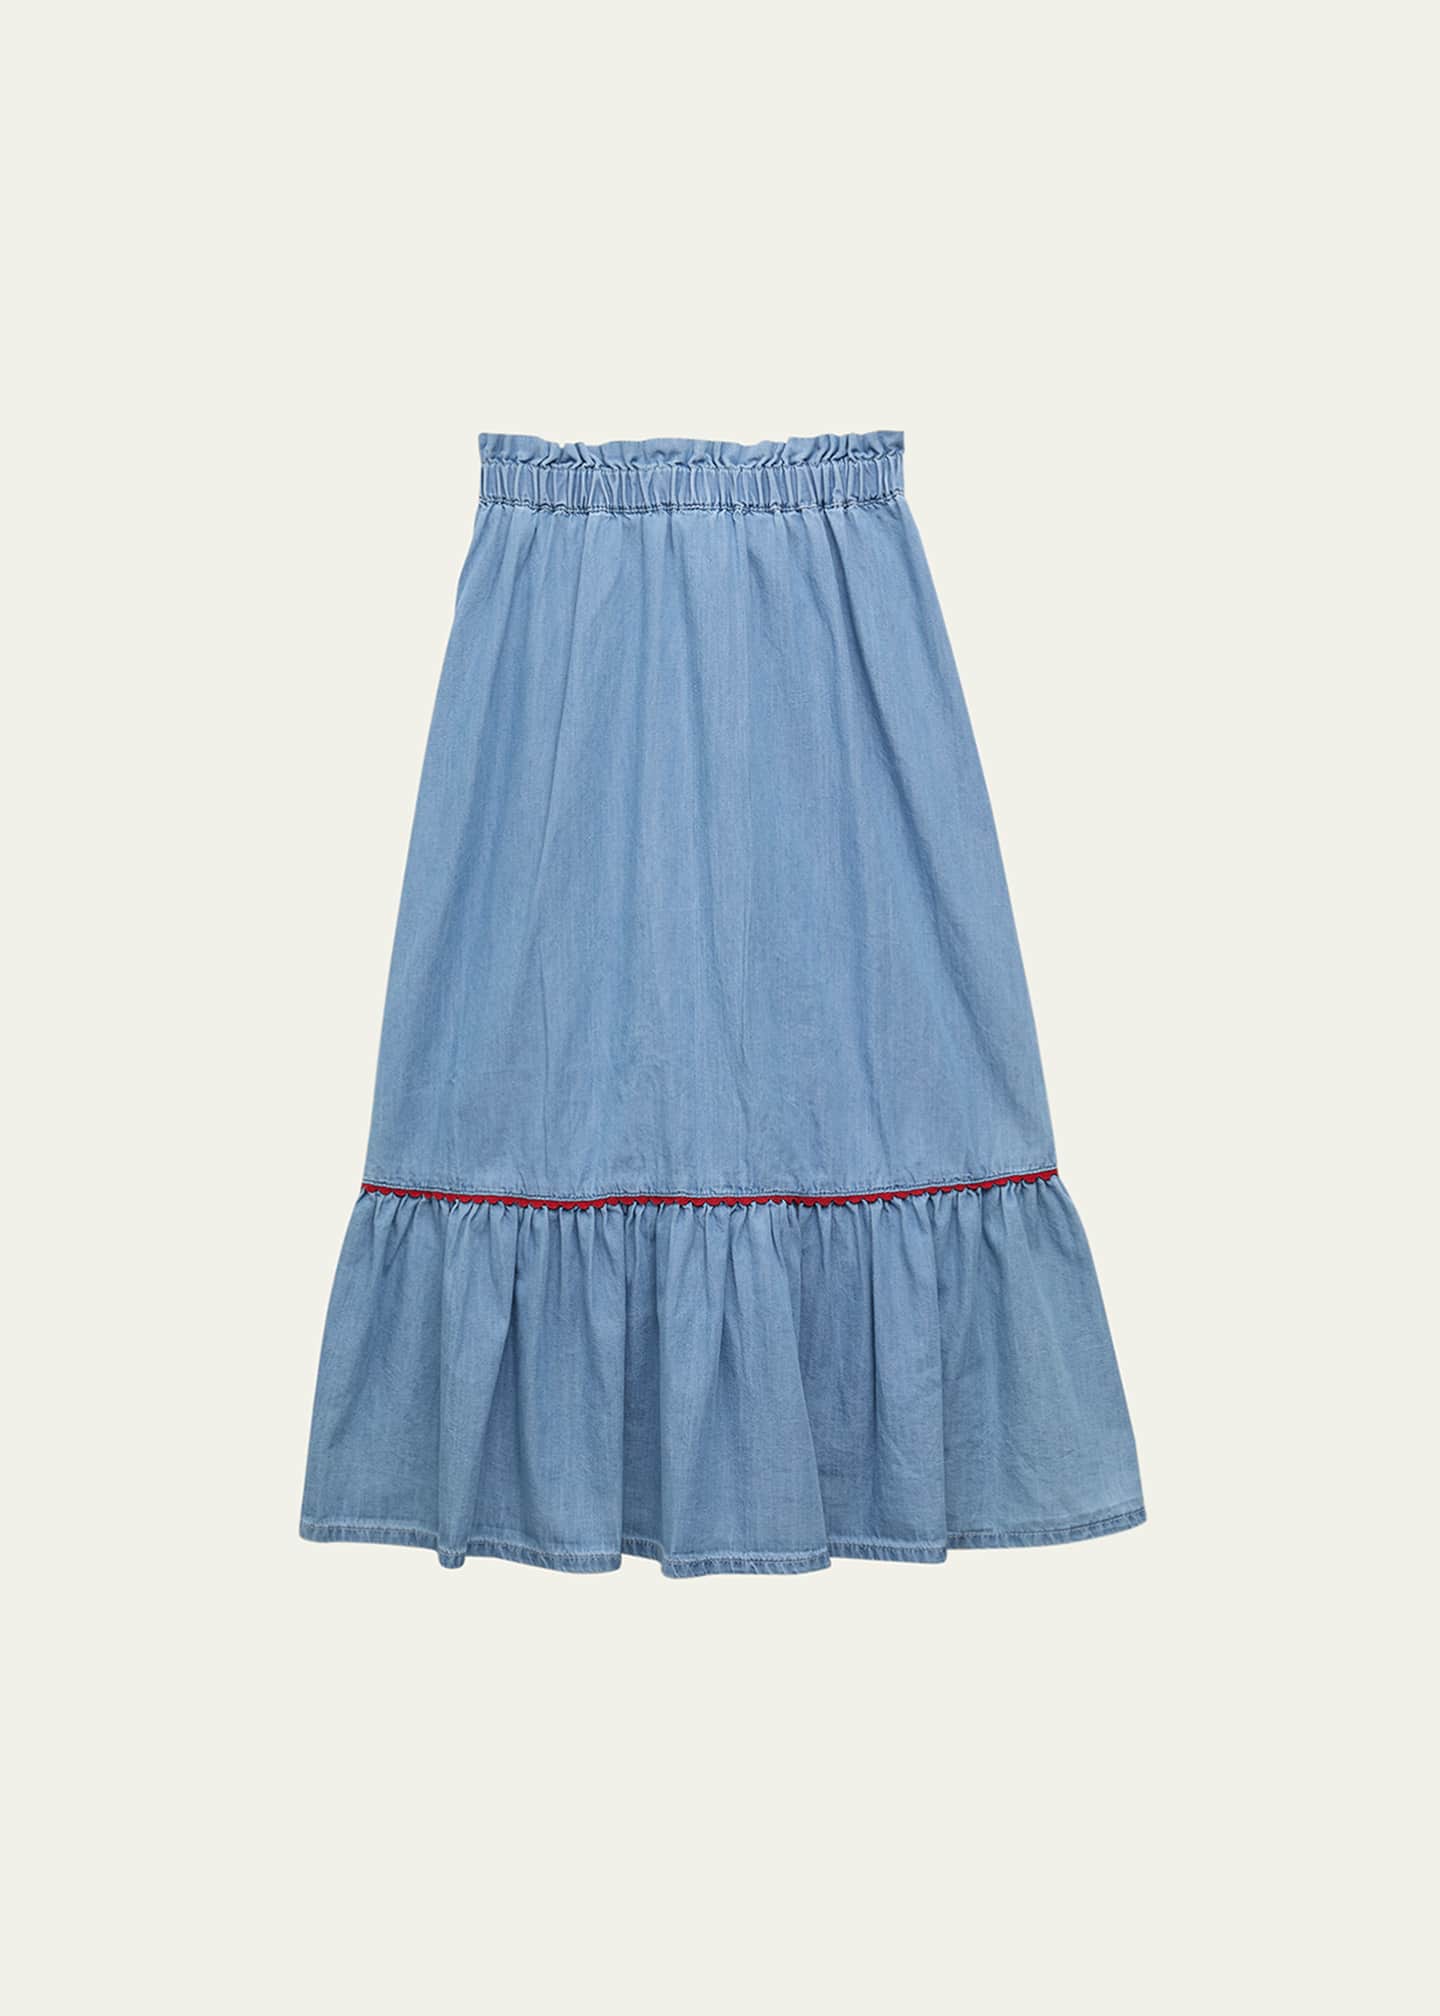 Bonton Girl's Denon Long Denim Skirt, Size 4-12